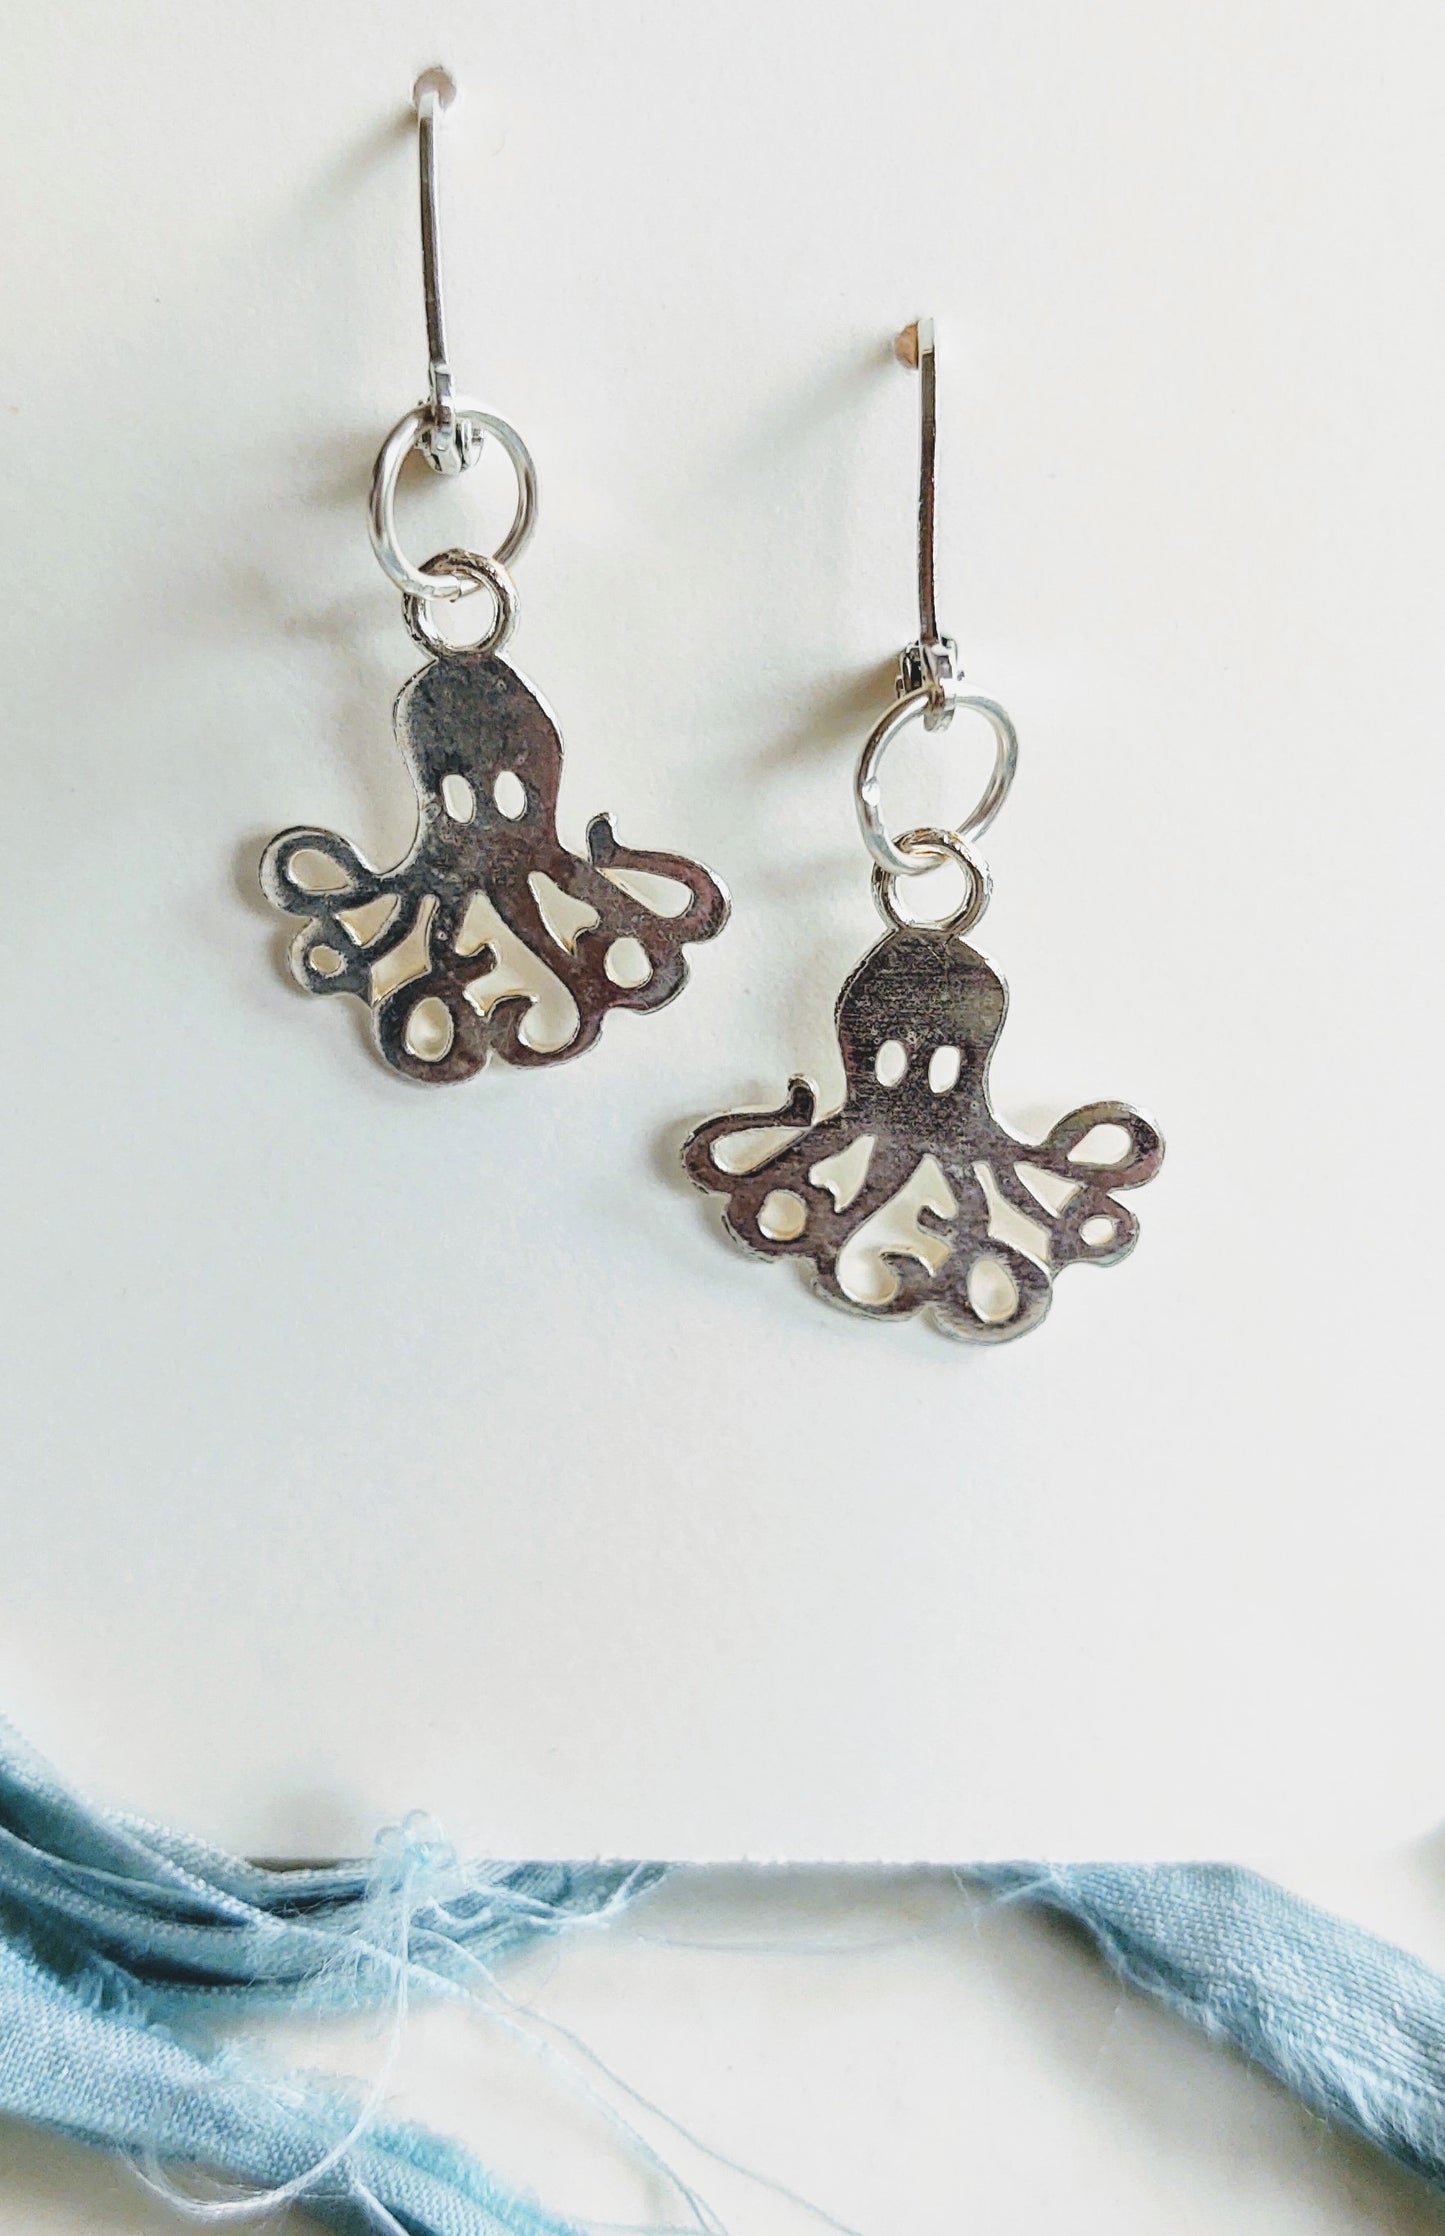 Octopus Garden earrings